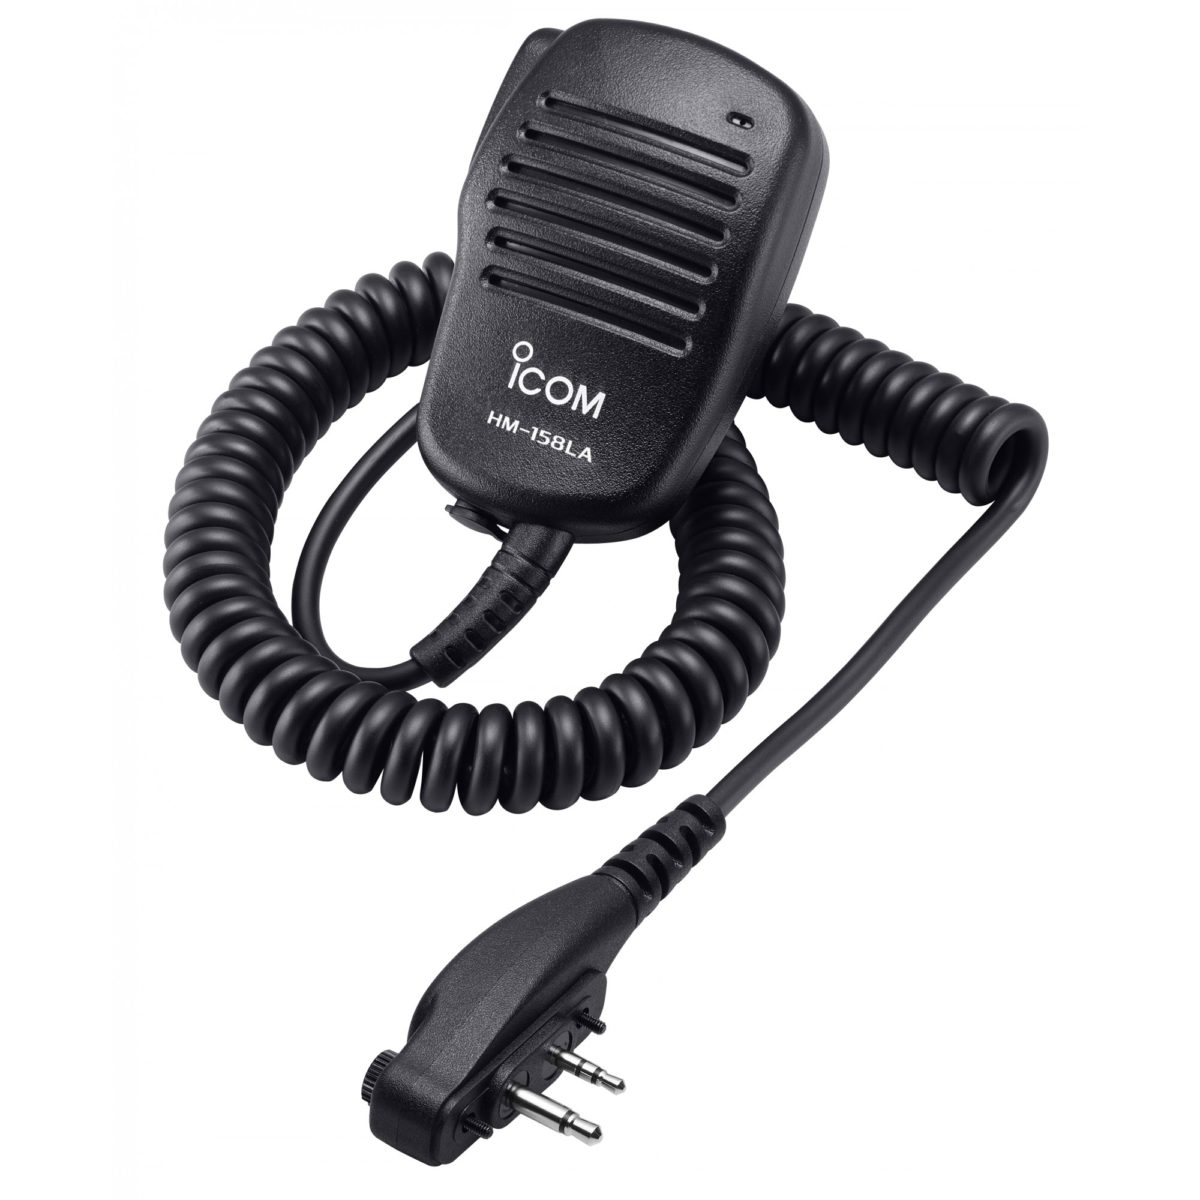 Micro haut-parleur ICOM HM-158LA